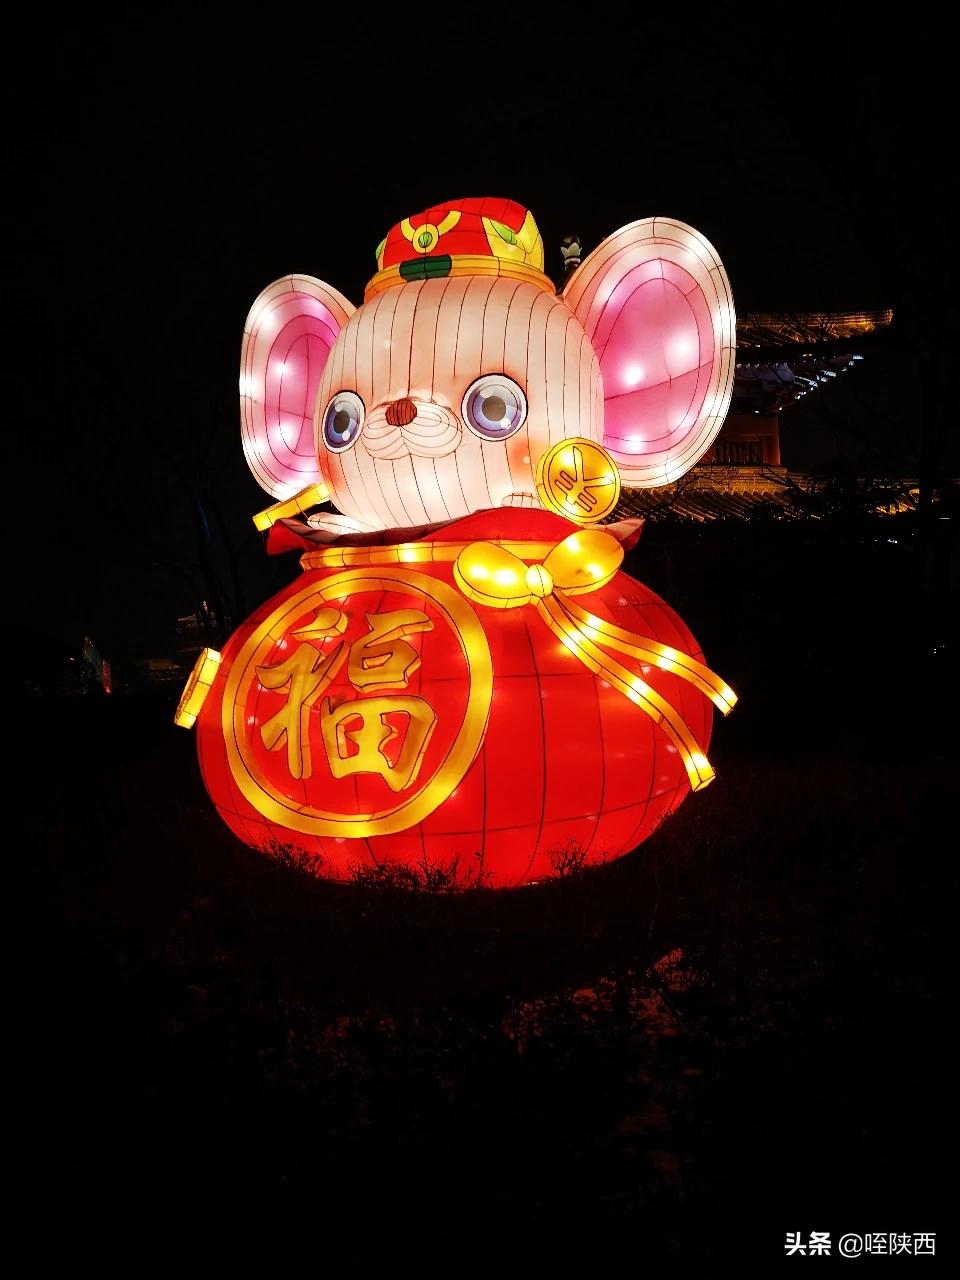 中国年·看西安 冒着严寒拍的大唐芙蓉园2020年的新春灯会 听说今天晚上点灯